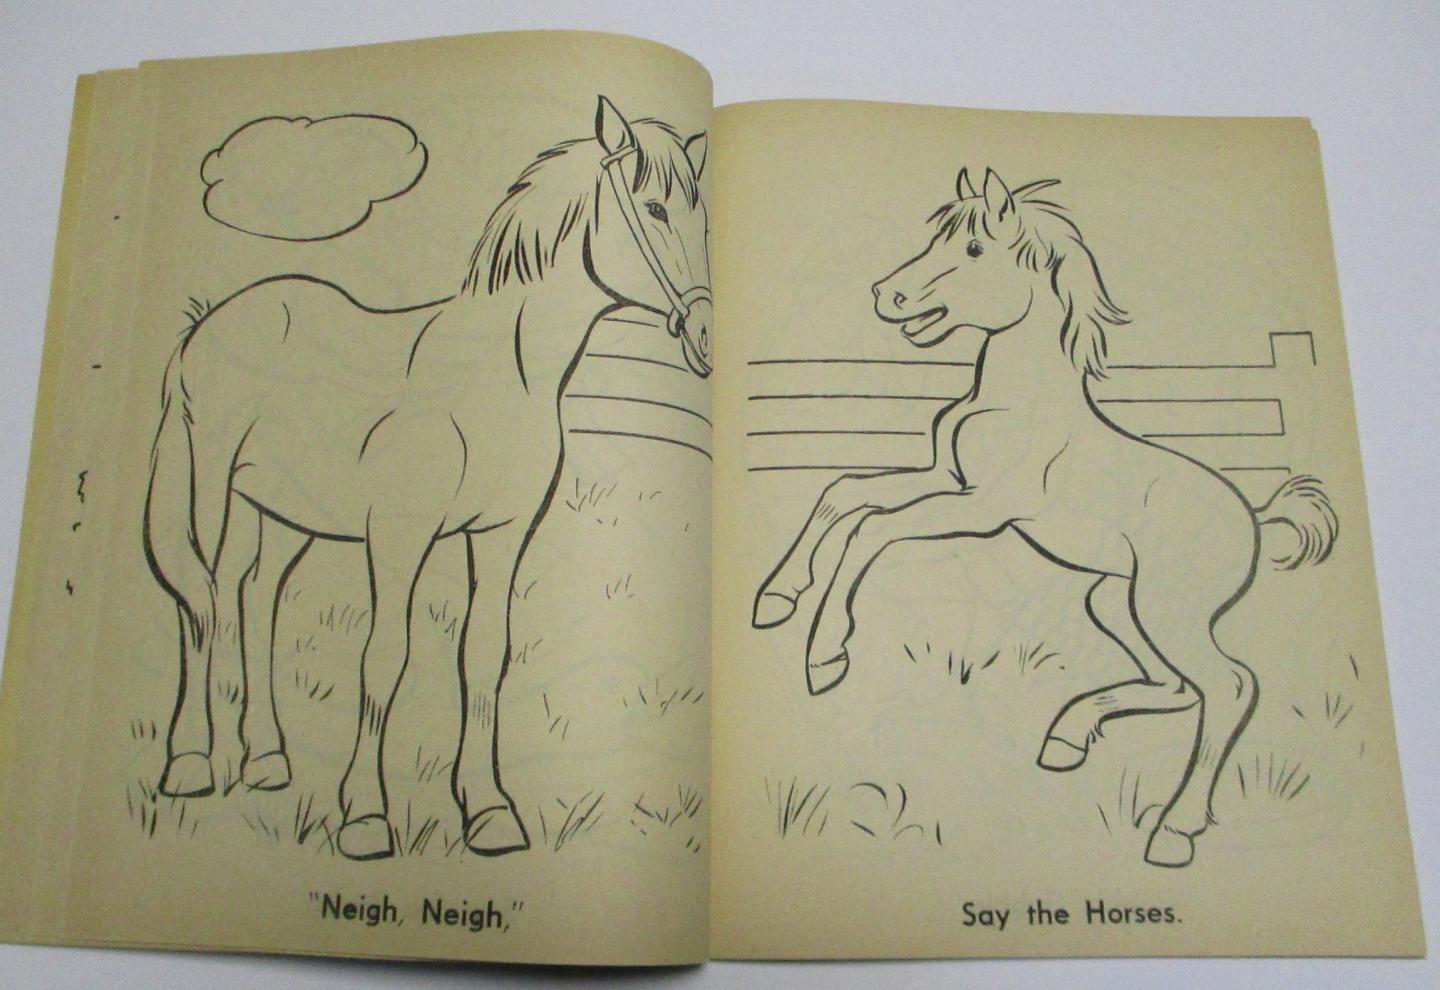  - MacDonald's Farm - Coloring Book